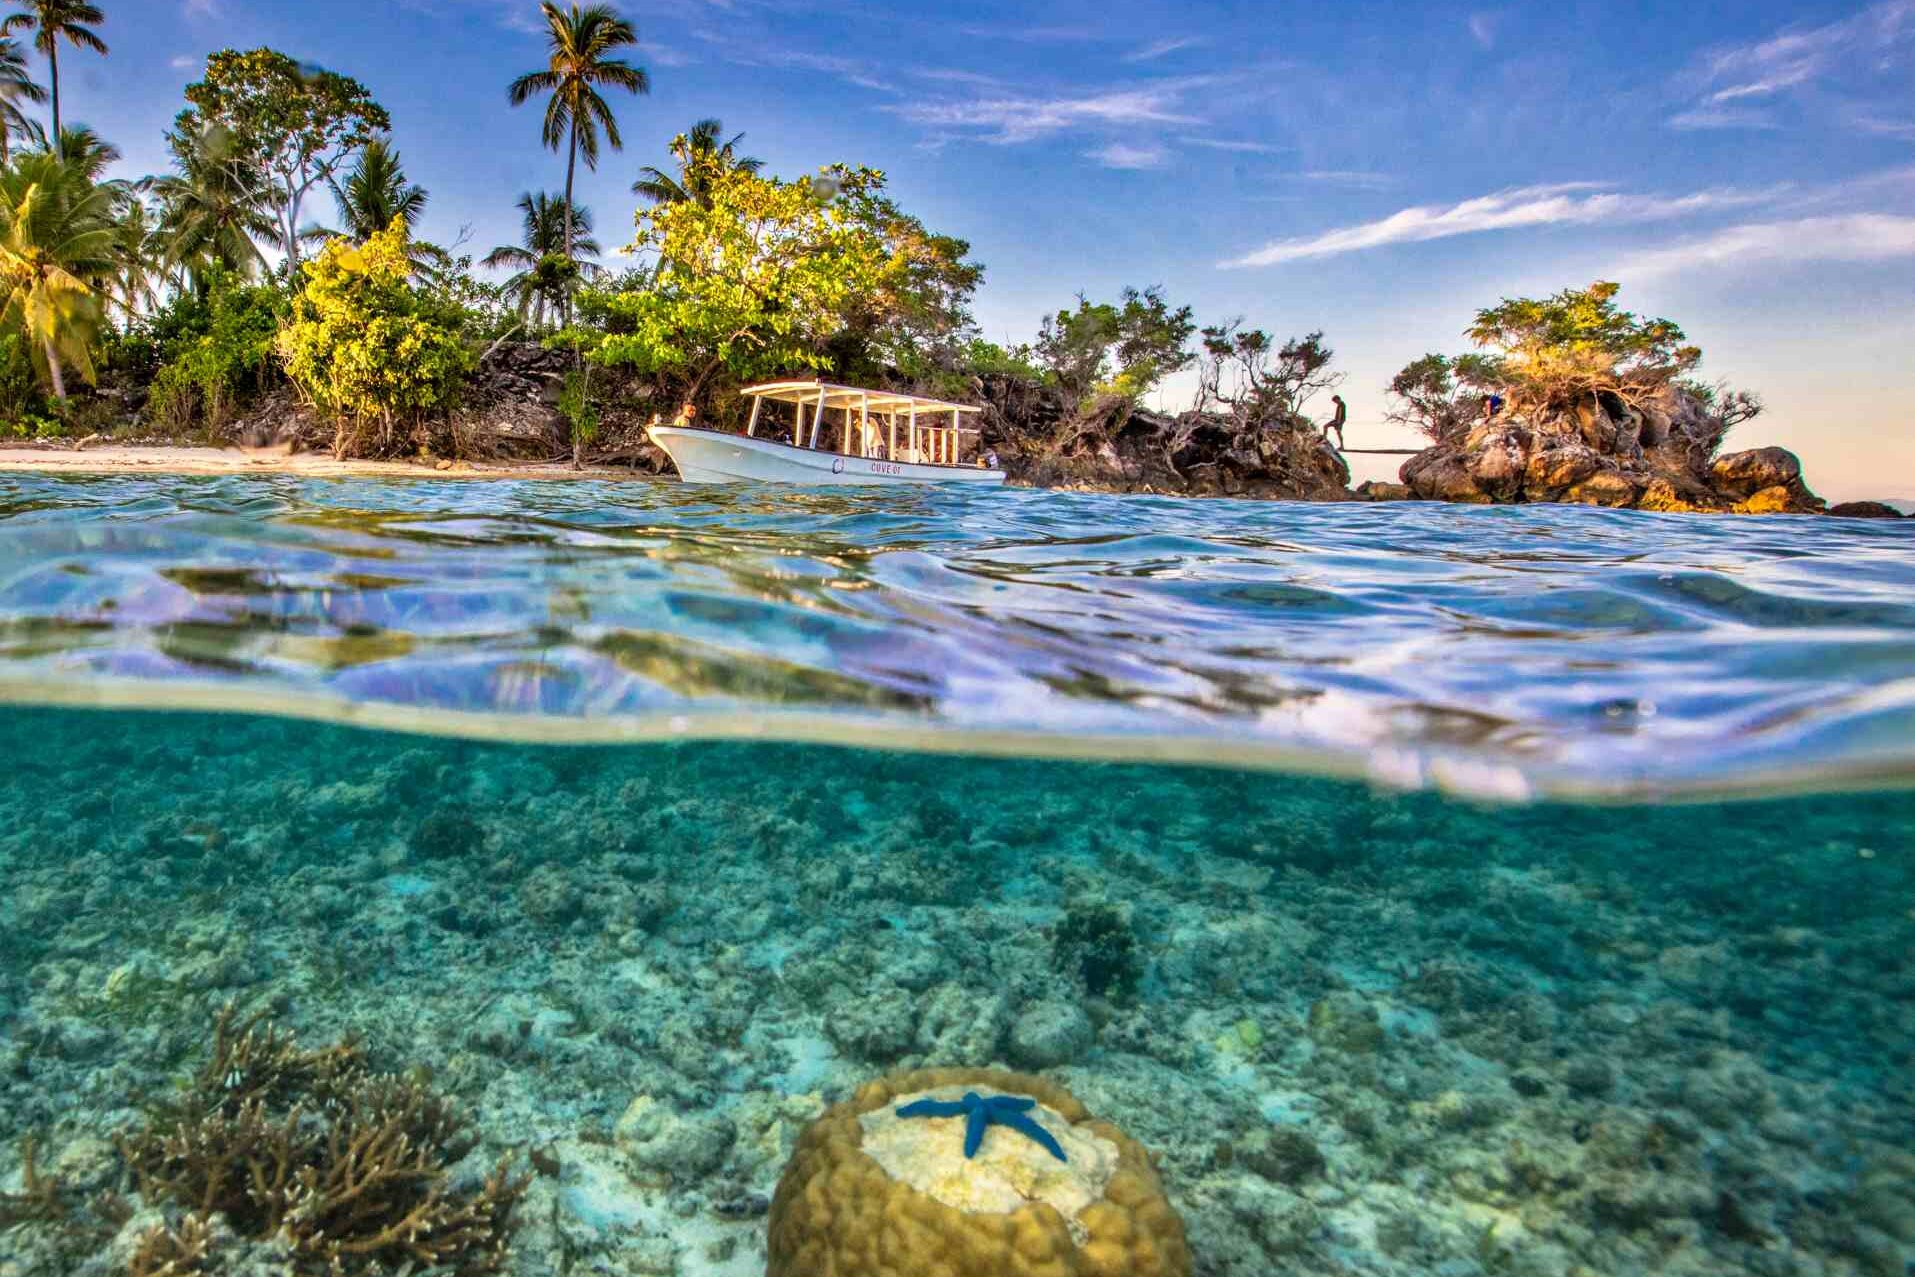  Cove Eco Resort, Raja Ampat: Underwater World Yeben Island